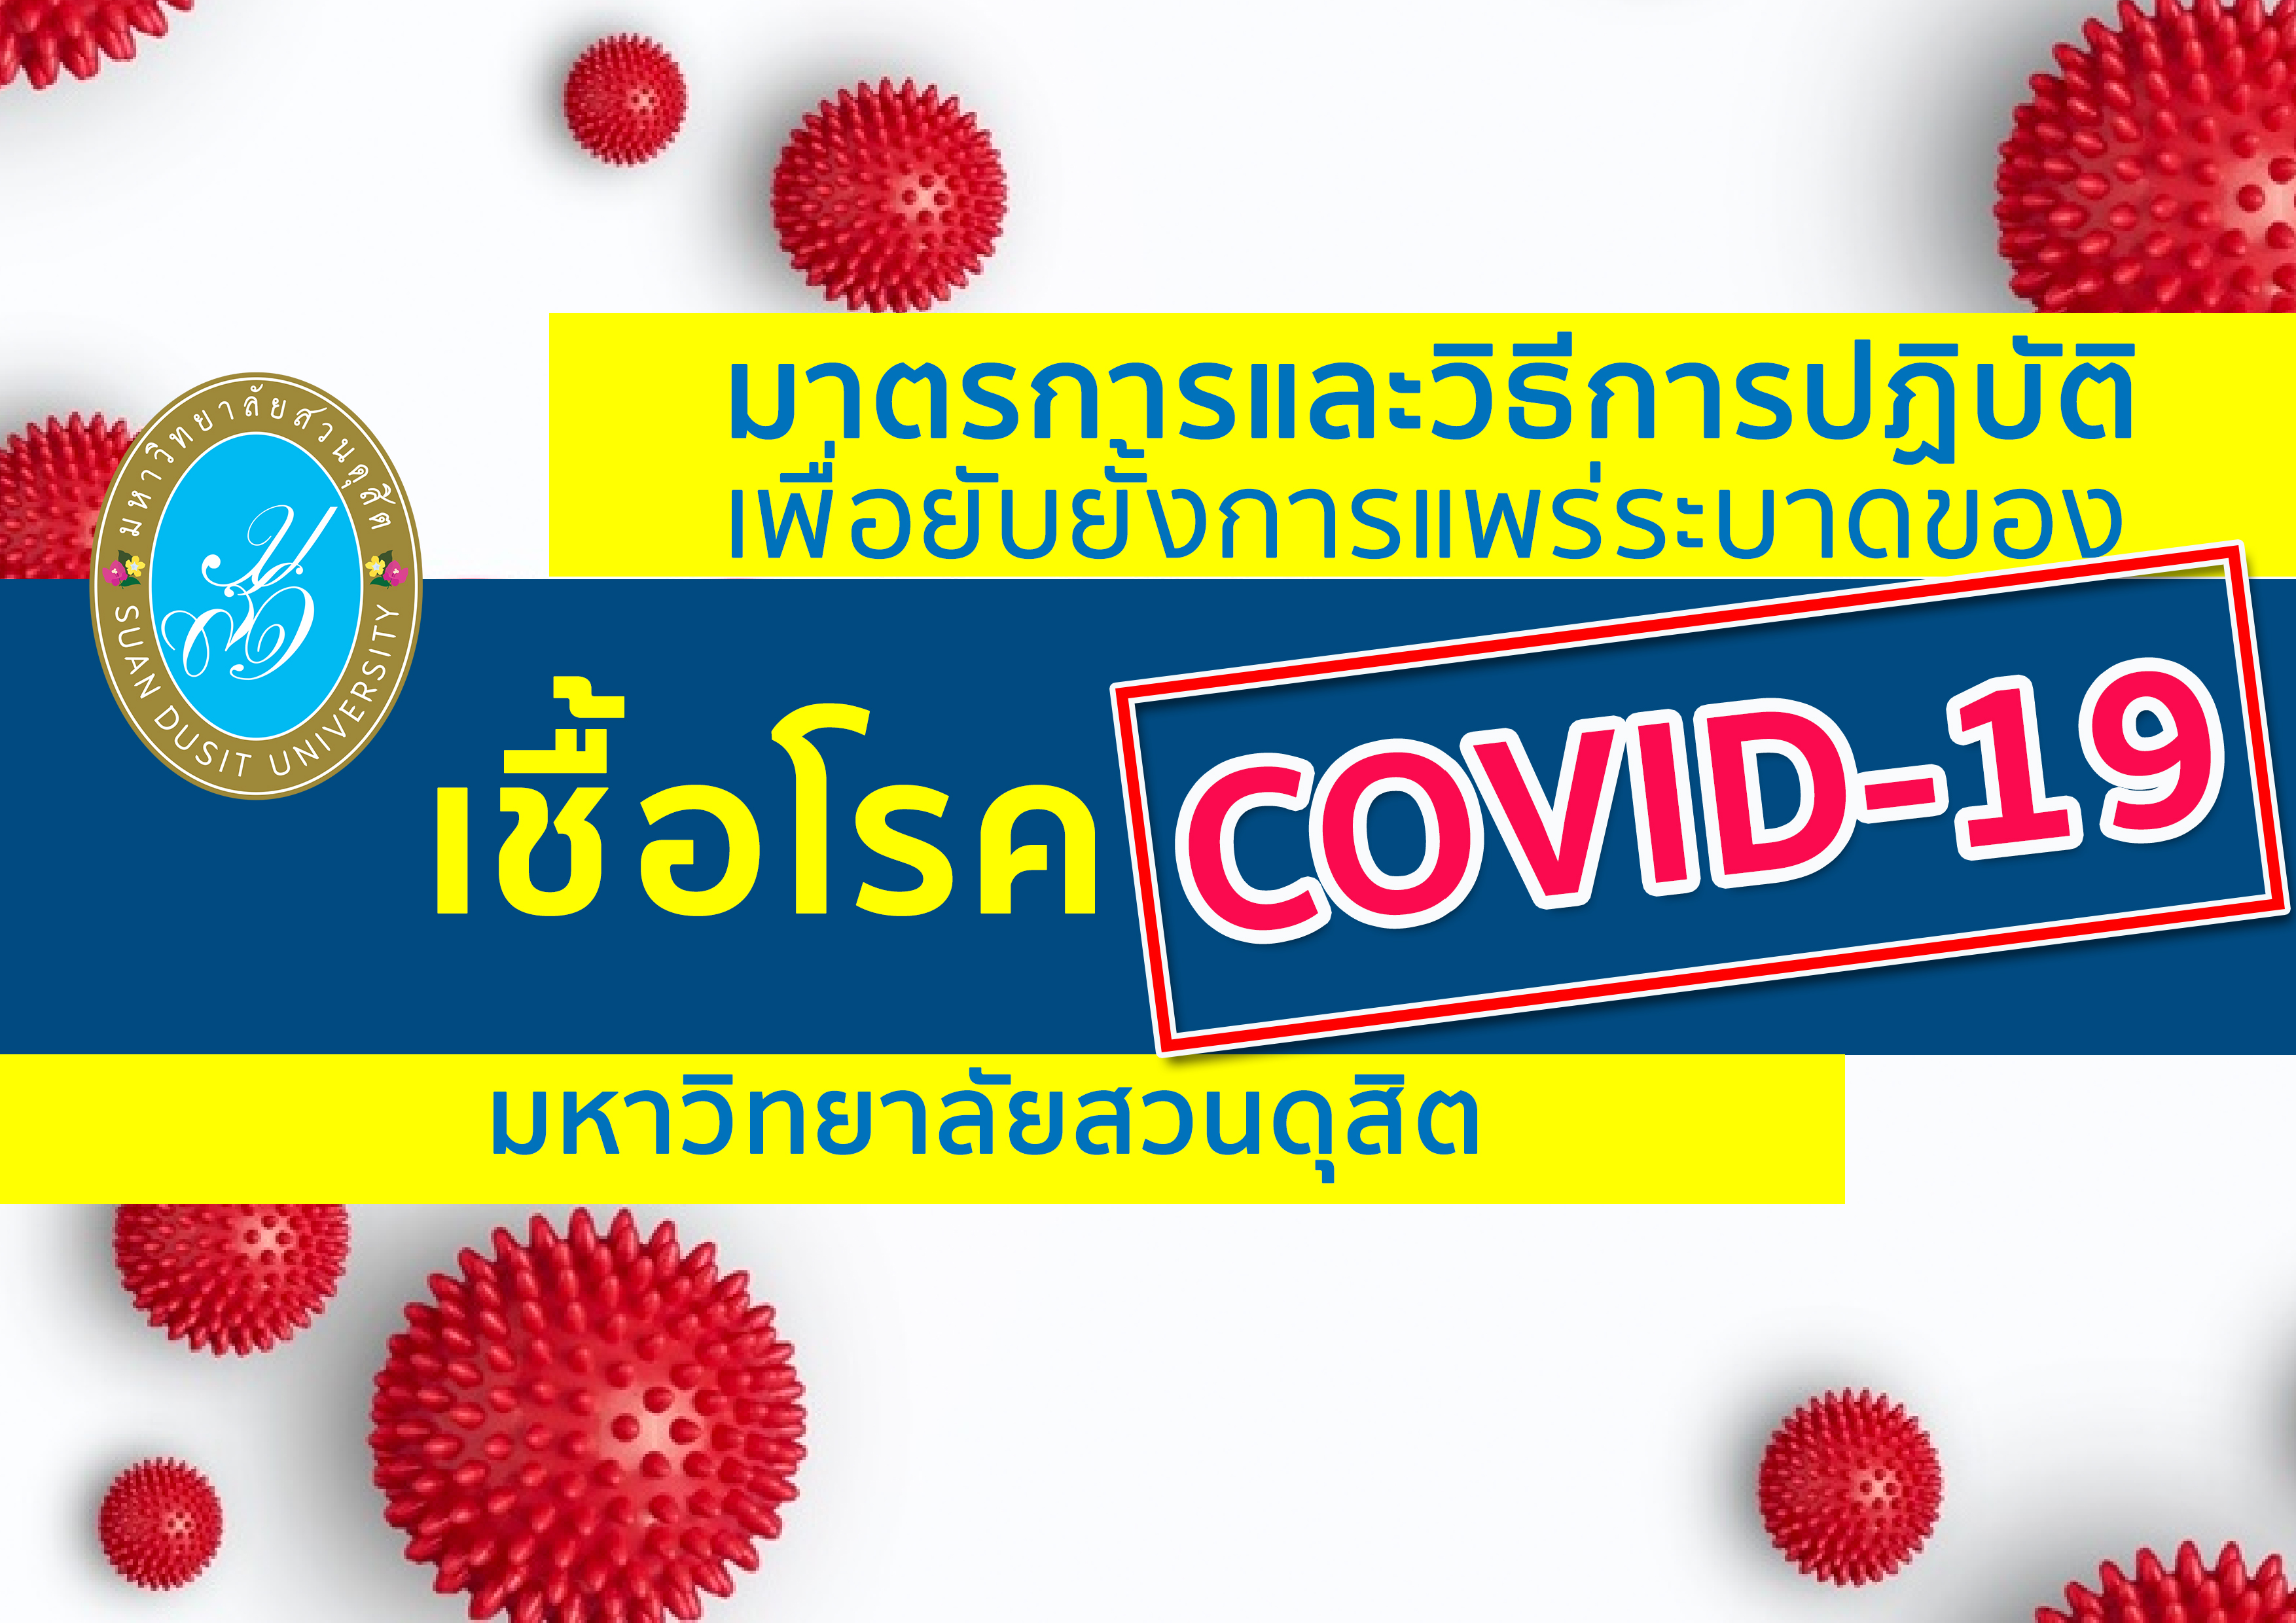 มาตรการและวิธีป้องกันการแพร่ระบาดของเชื้อโรค COVID-19 ของมหาวิทยาลัยสวนดุสิต